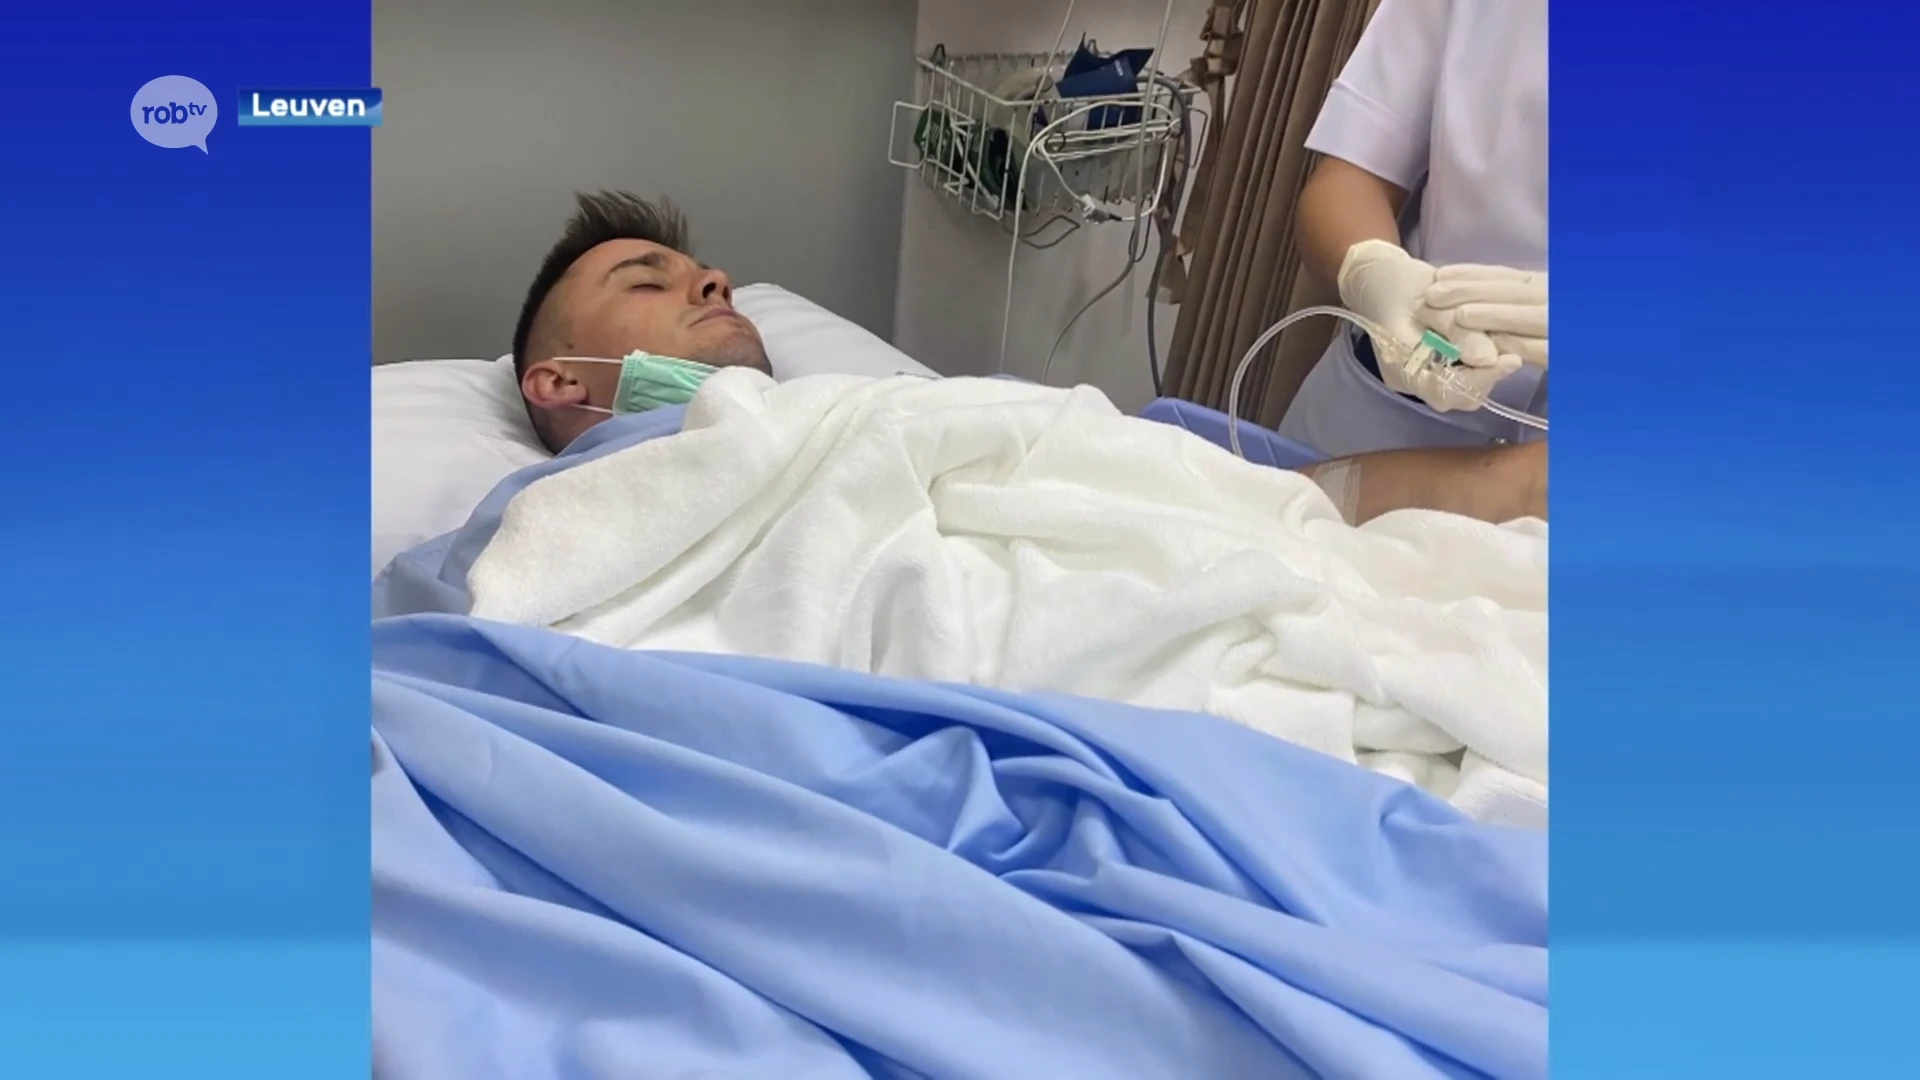 Nicole uit Leuven probeert zwaargewonde zoon Julius uit Thais ziekenhuis te halen: "Het is een hel, een horrormovie"